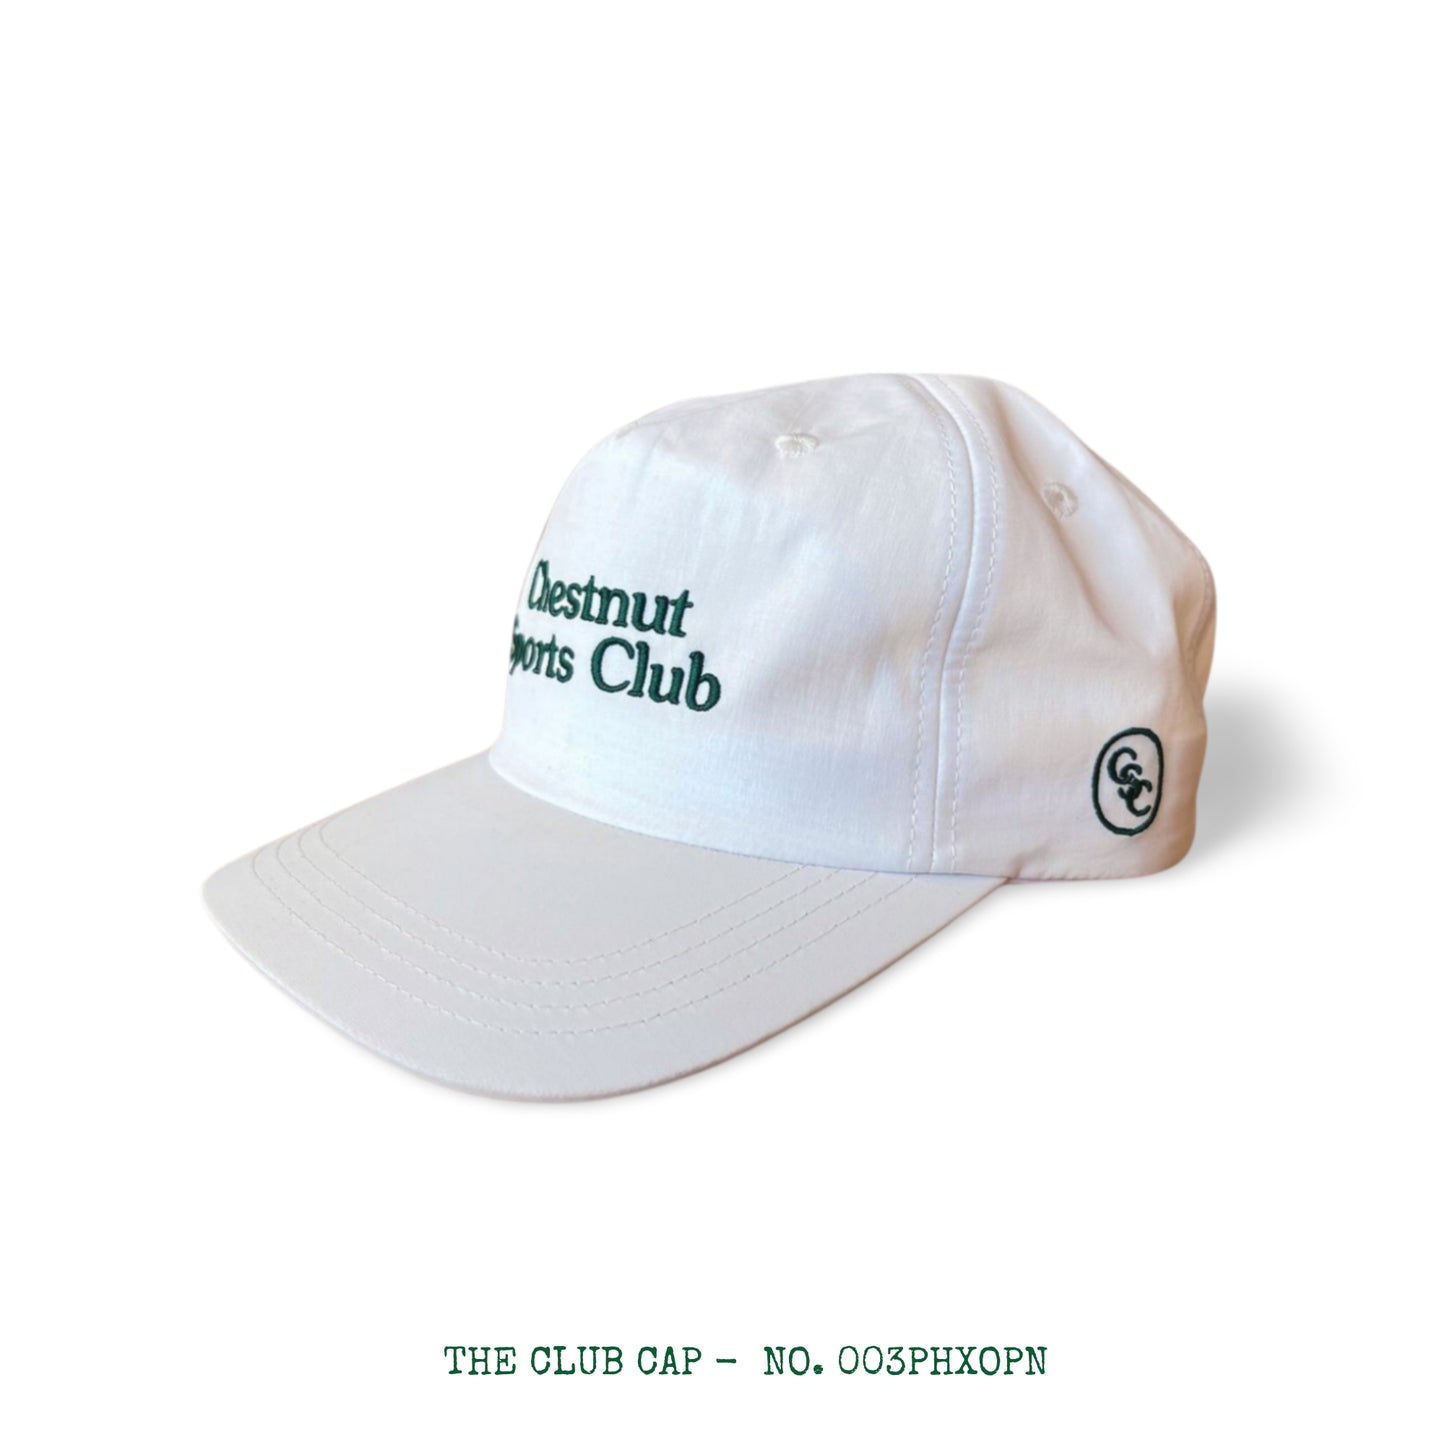 The Club Cap